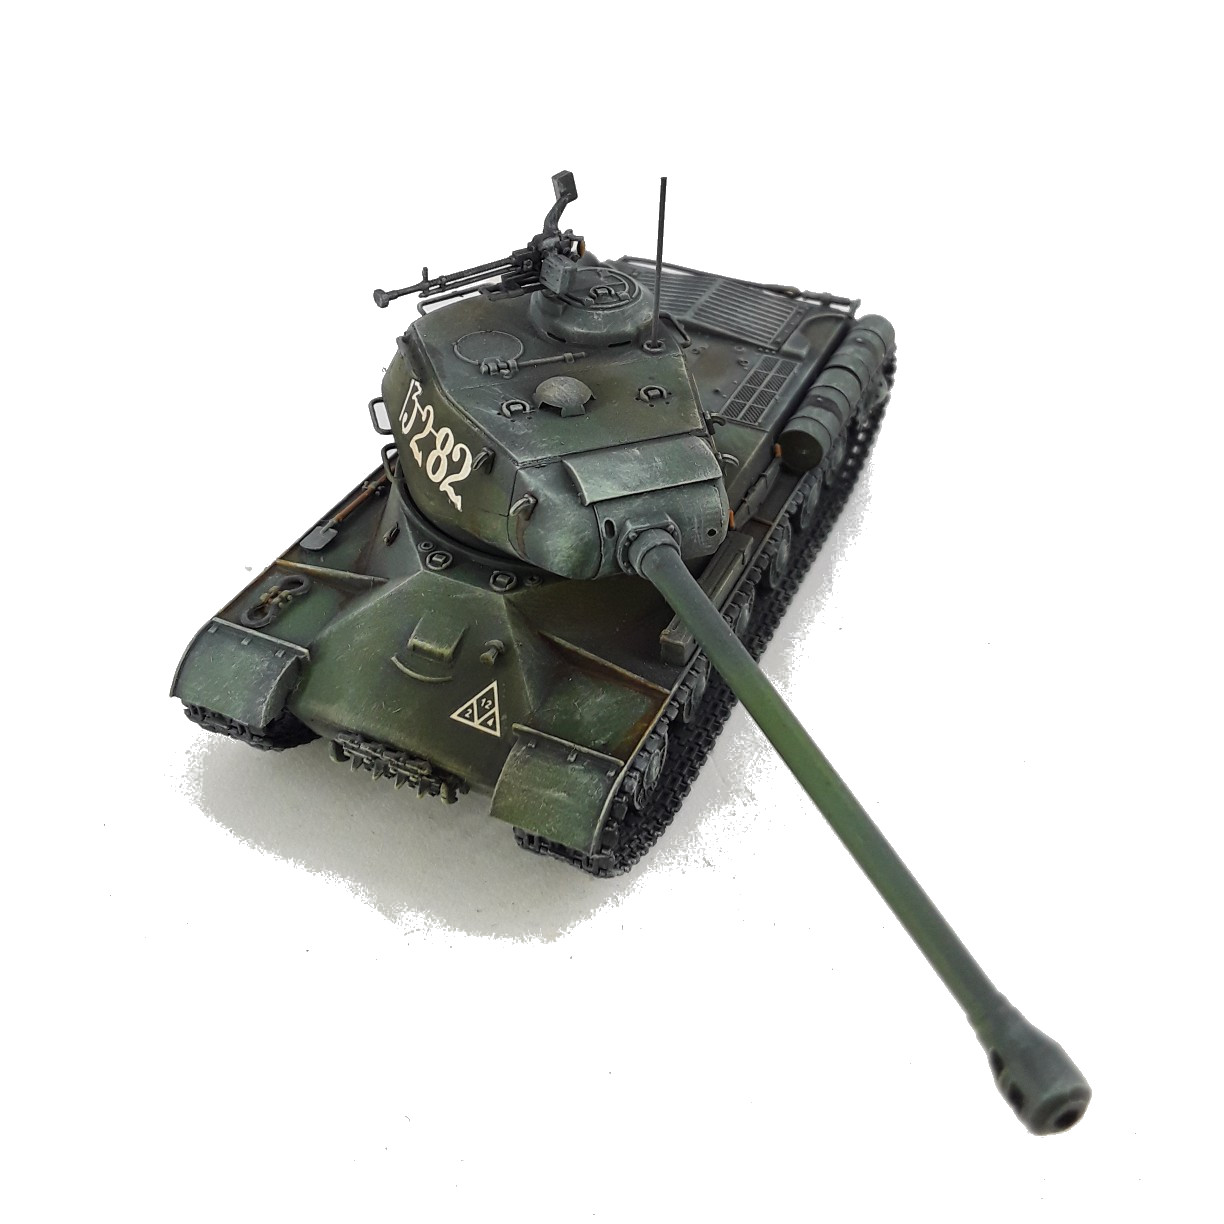 Beiträge Rüstungsspirale #82 September 2021: Schwere Panzer Is09